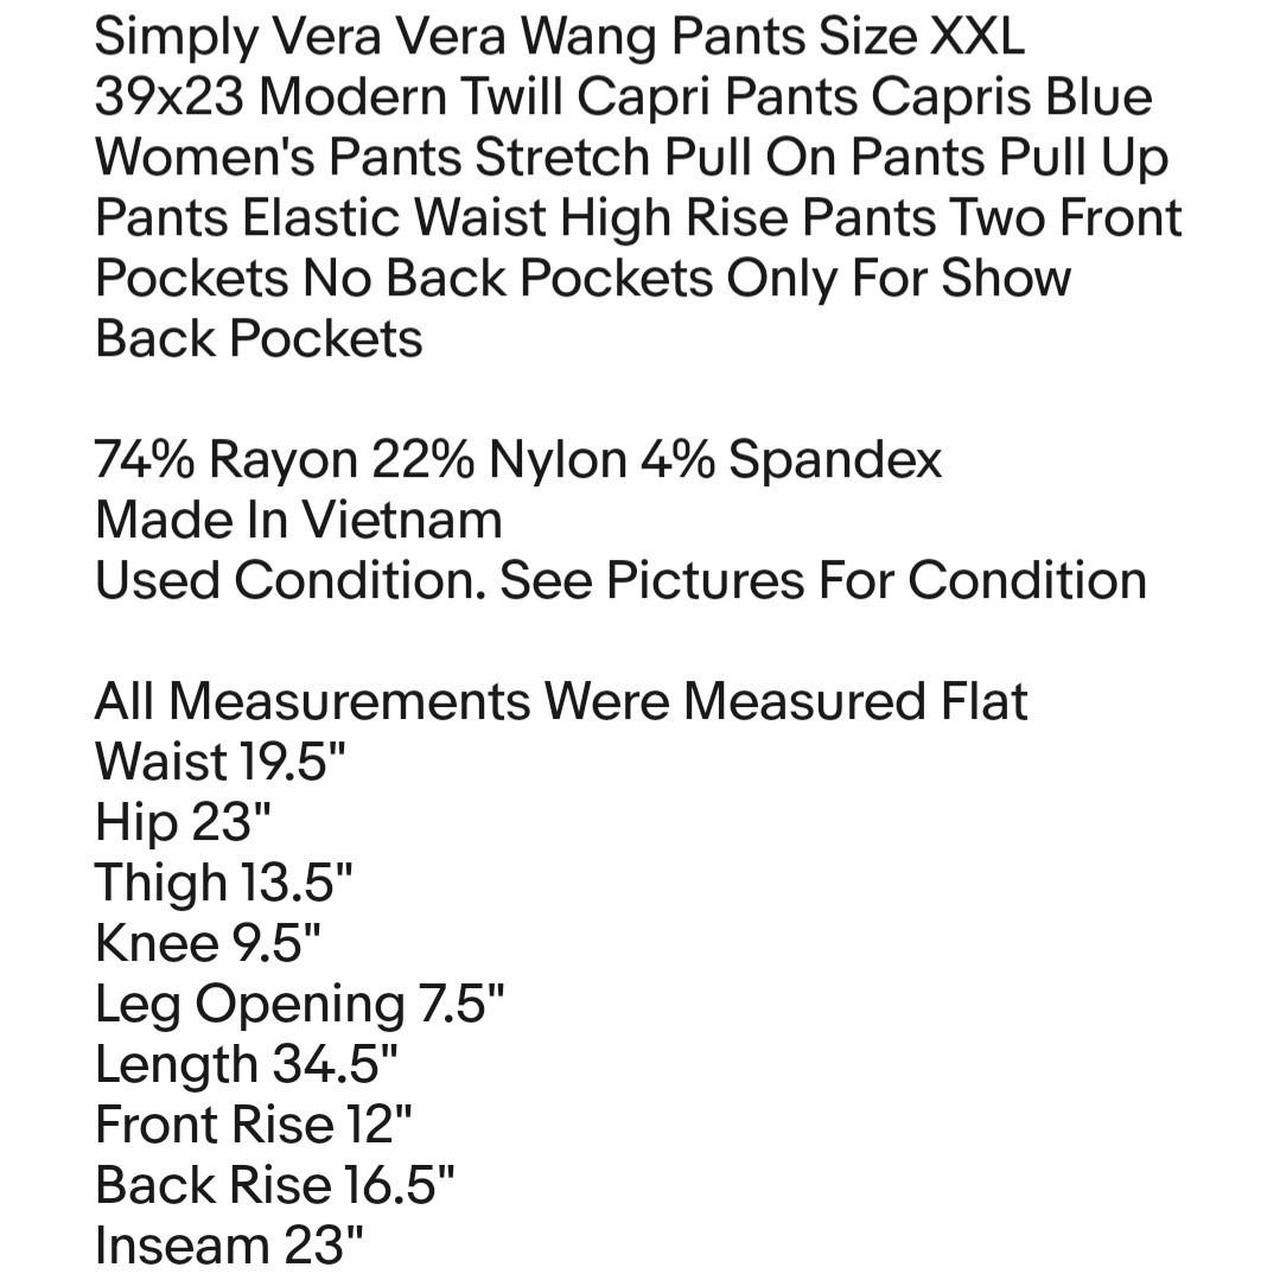 Simply Vera Vera Wang Leggings B&W Size Large #designer - Depop